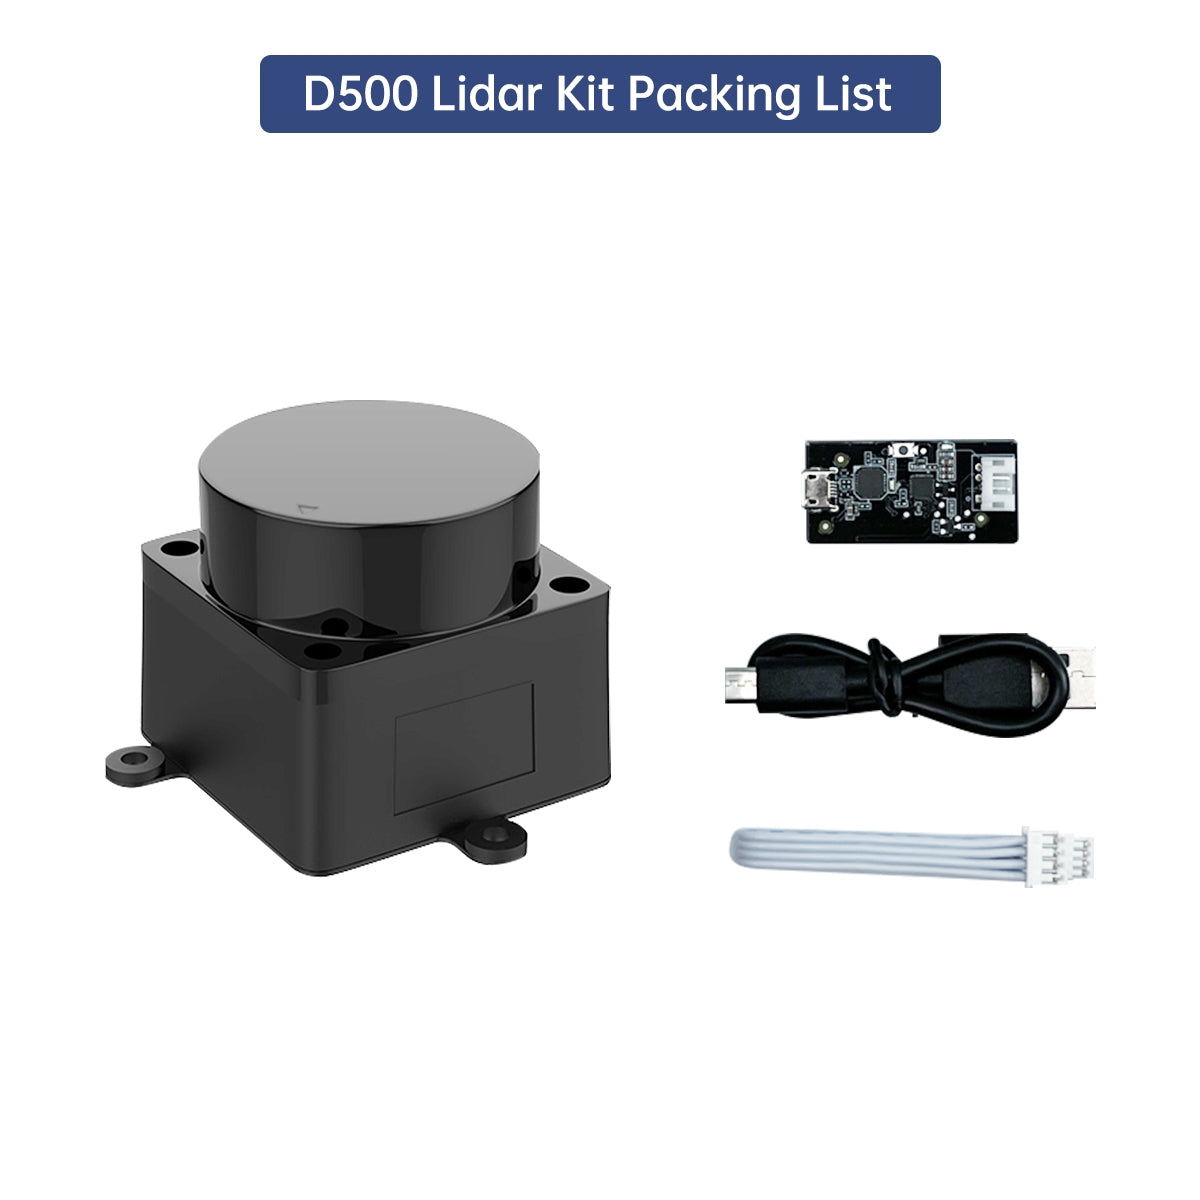 STL-19P D500 Lidar Developer Kit 360 Degrees DTOF Laser Scanner Support ROS1 ROS2 Raspberry Pi Jetson Nano